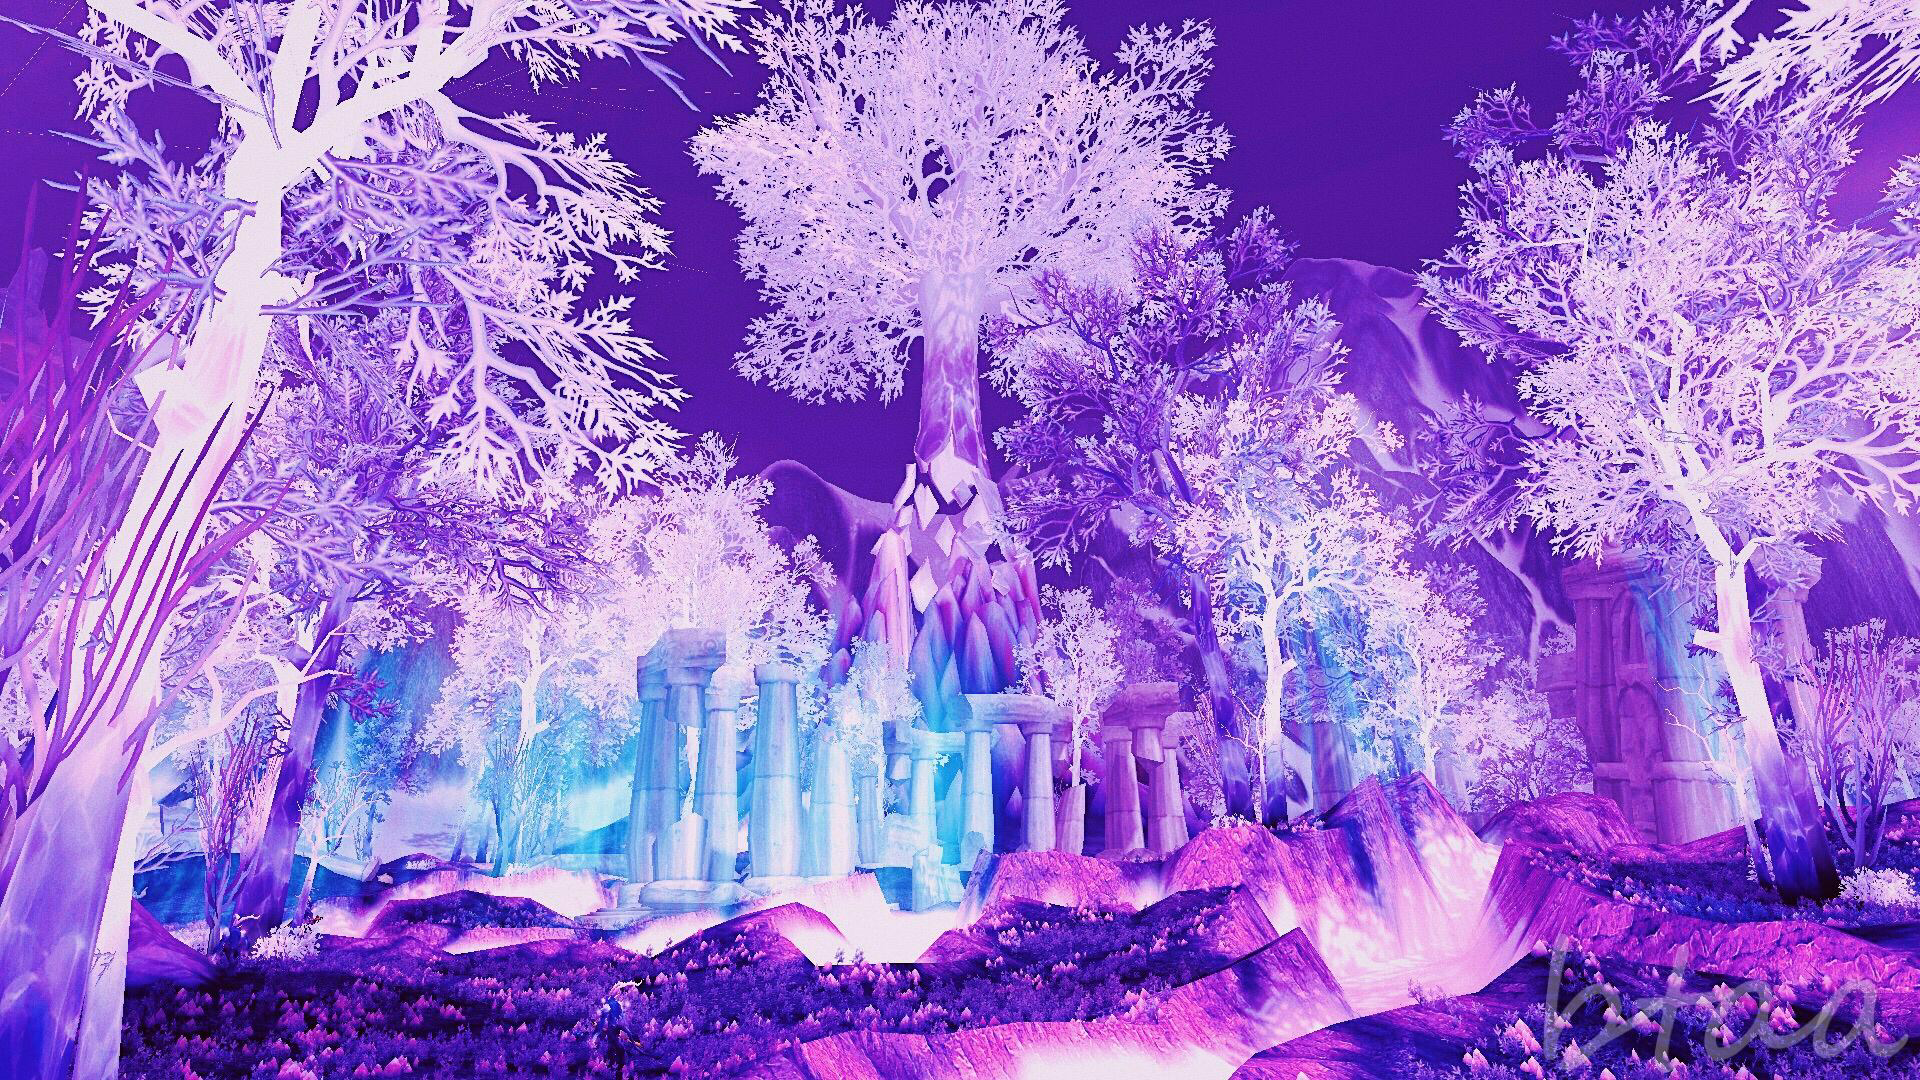 似树非树的高大水晶丛林,散发着梦幻的淡紫色,它们是从地下生根发芽长